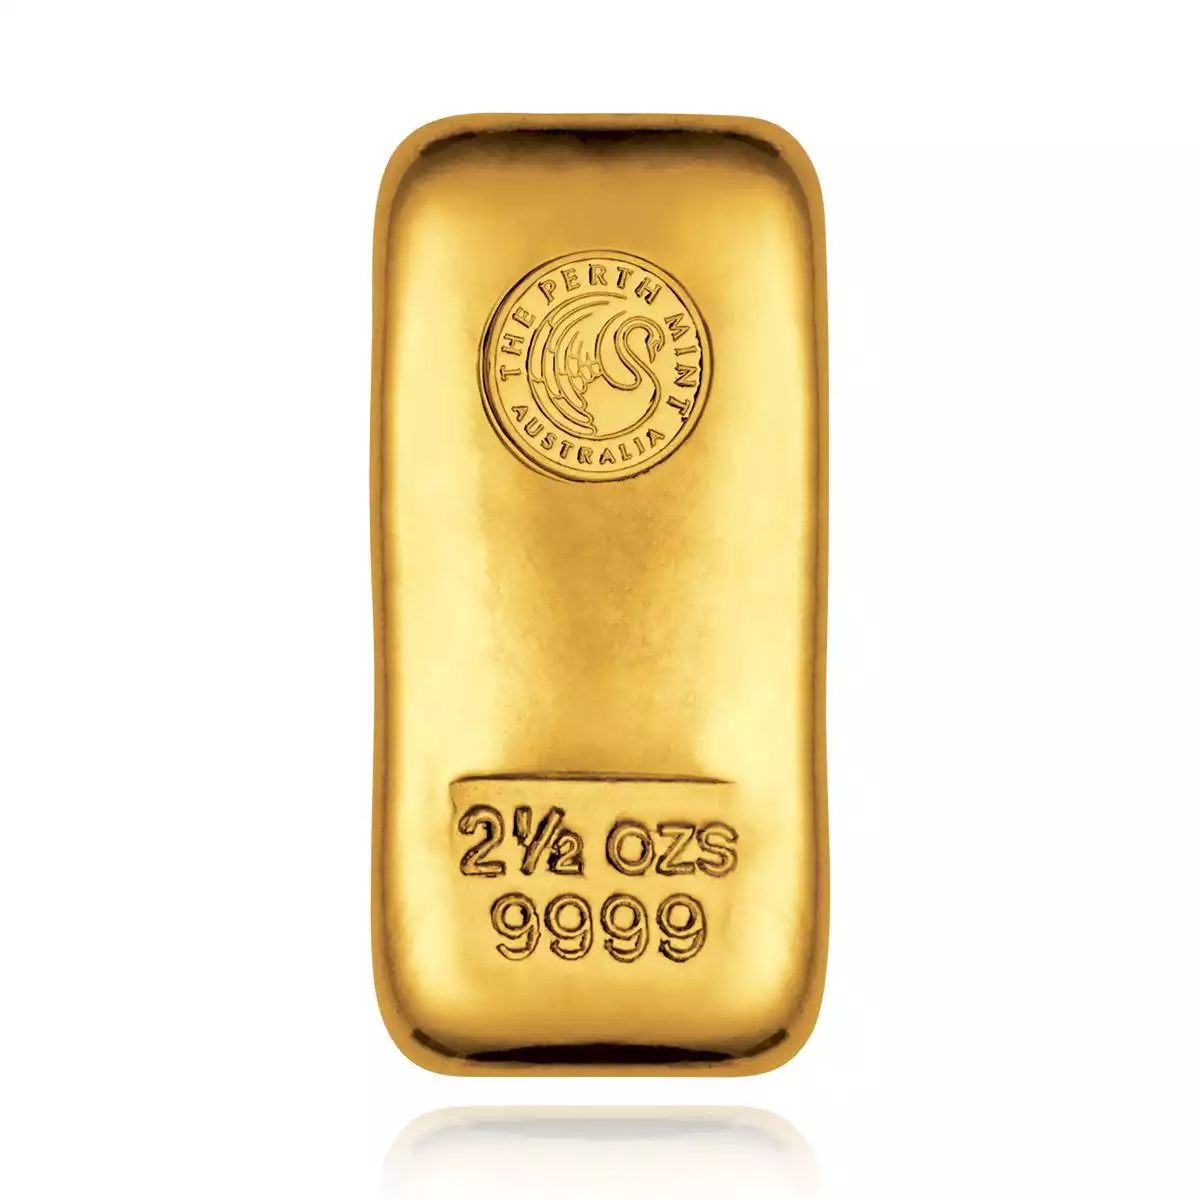 Продать золото 999. Золотой слиток Perth Mint. Gold 999.9. Цвет золота 999.9 пробы. Gold 999 слитки.